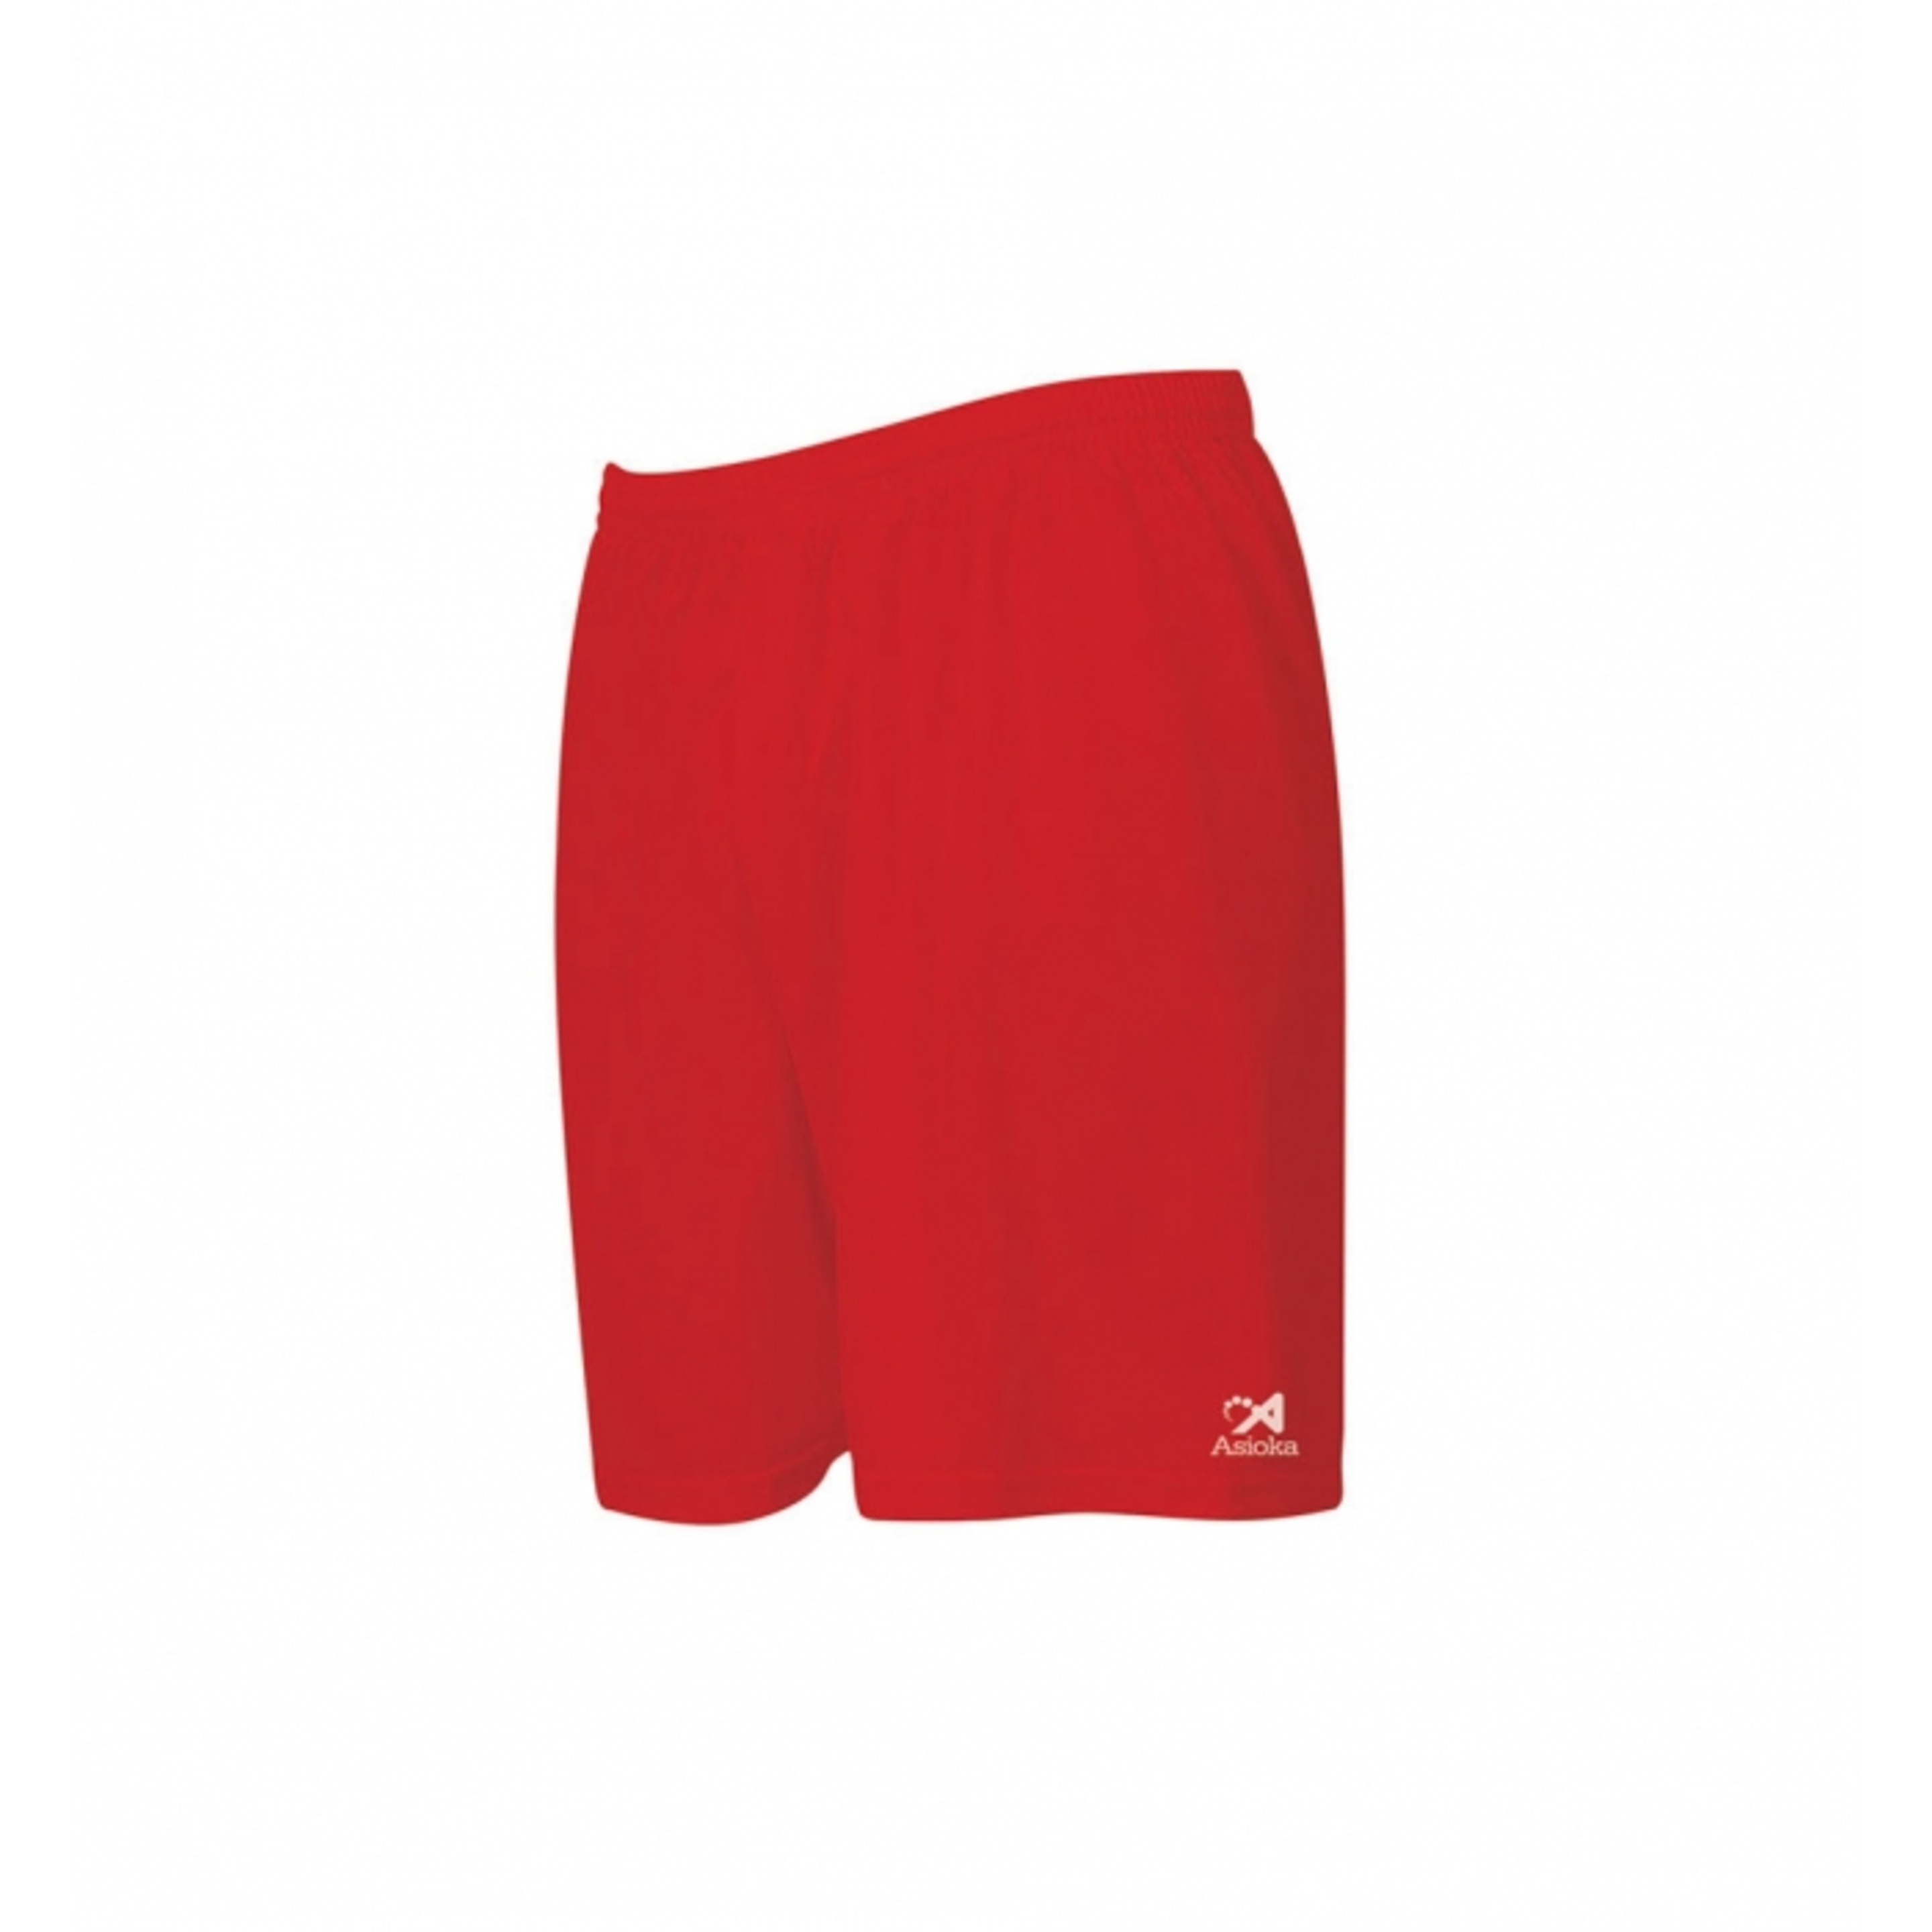 Pantalón Corto Modelo Premium Asioka - rojo - Pantalón Corto Futbol  MKP